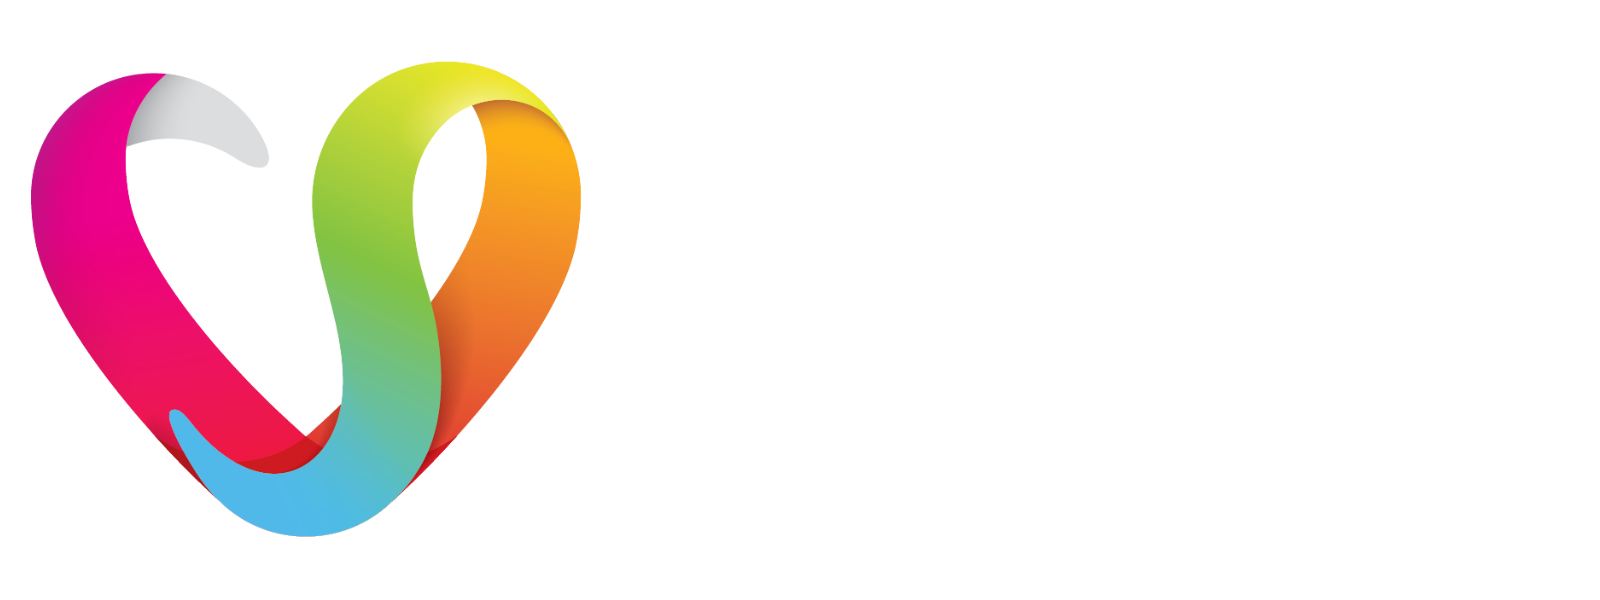 Viola Startzman Clinic